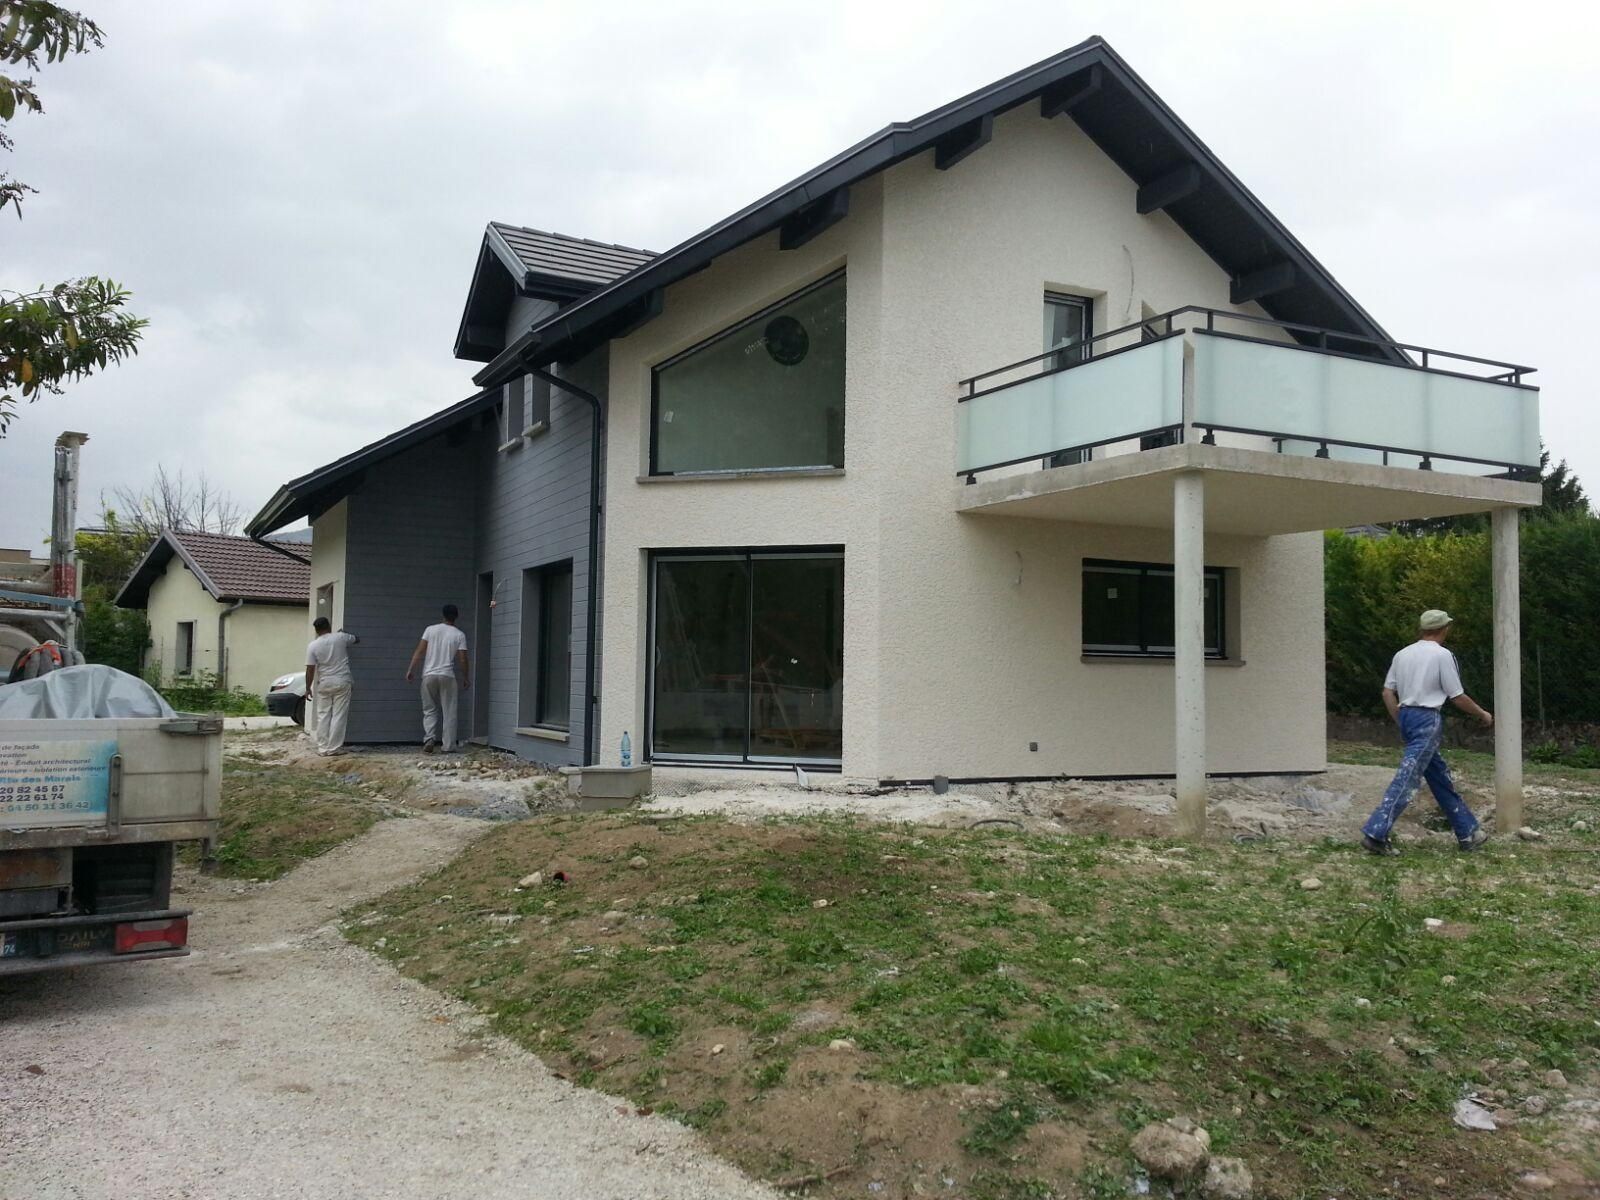 Une maison avec un côté couvert de bardage gris